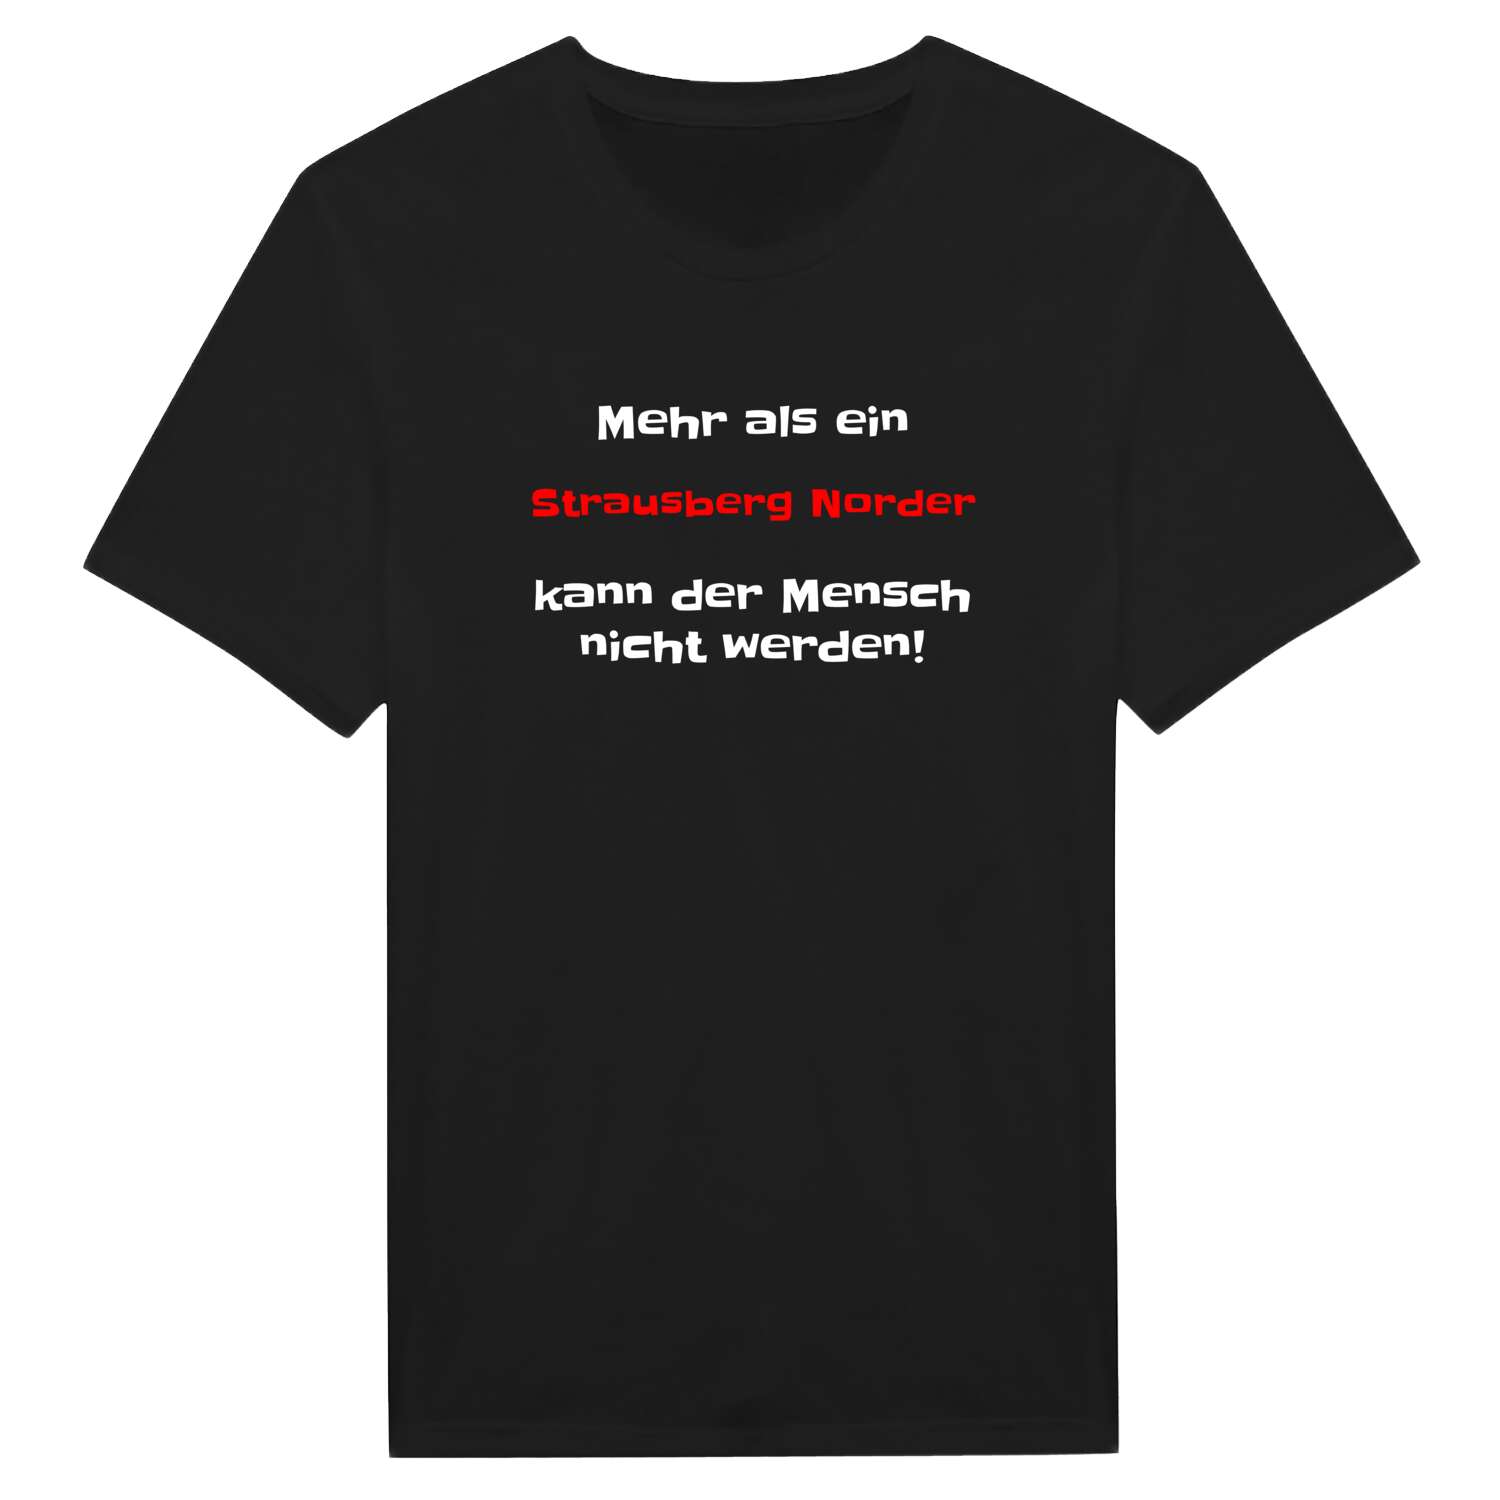 Strausberg Nord T-Shirt »Mehr als ein«